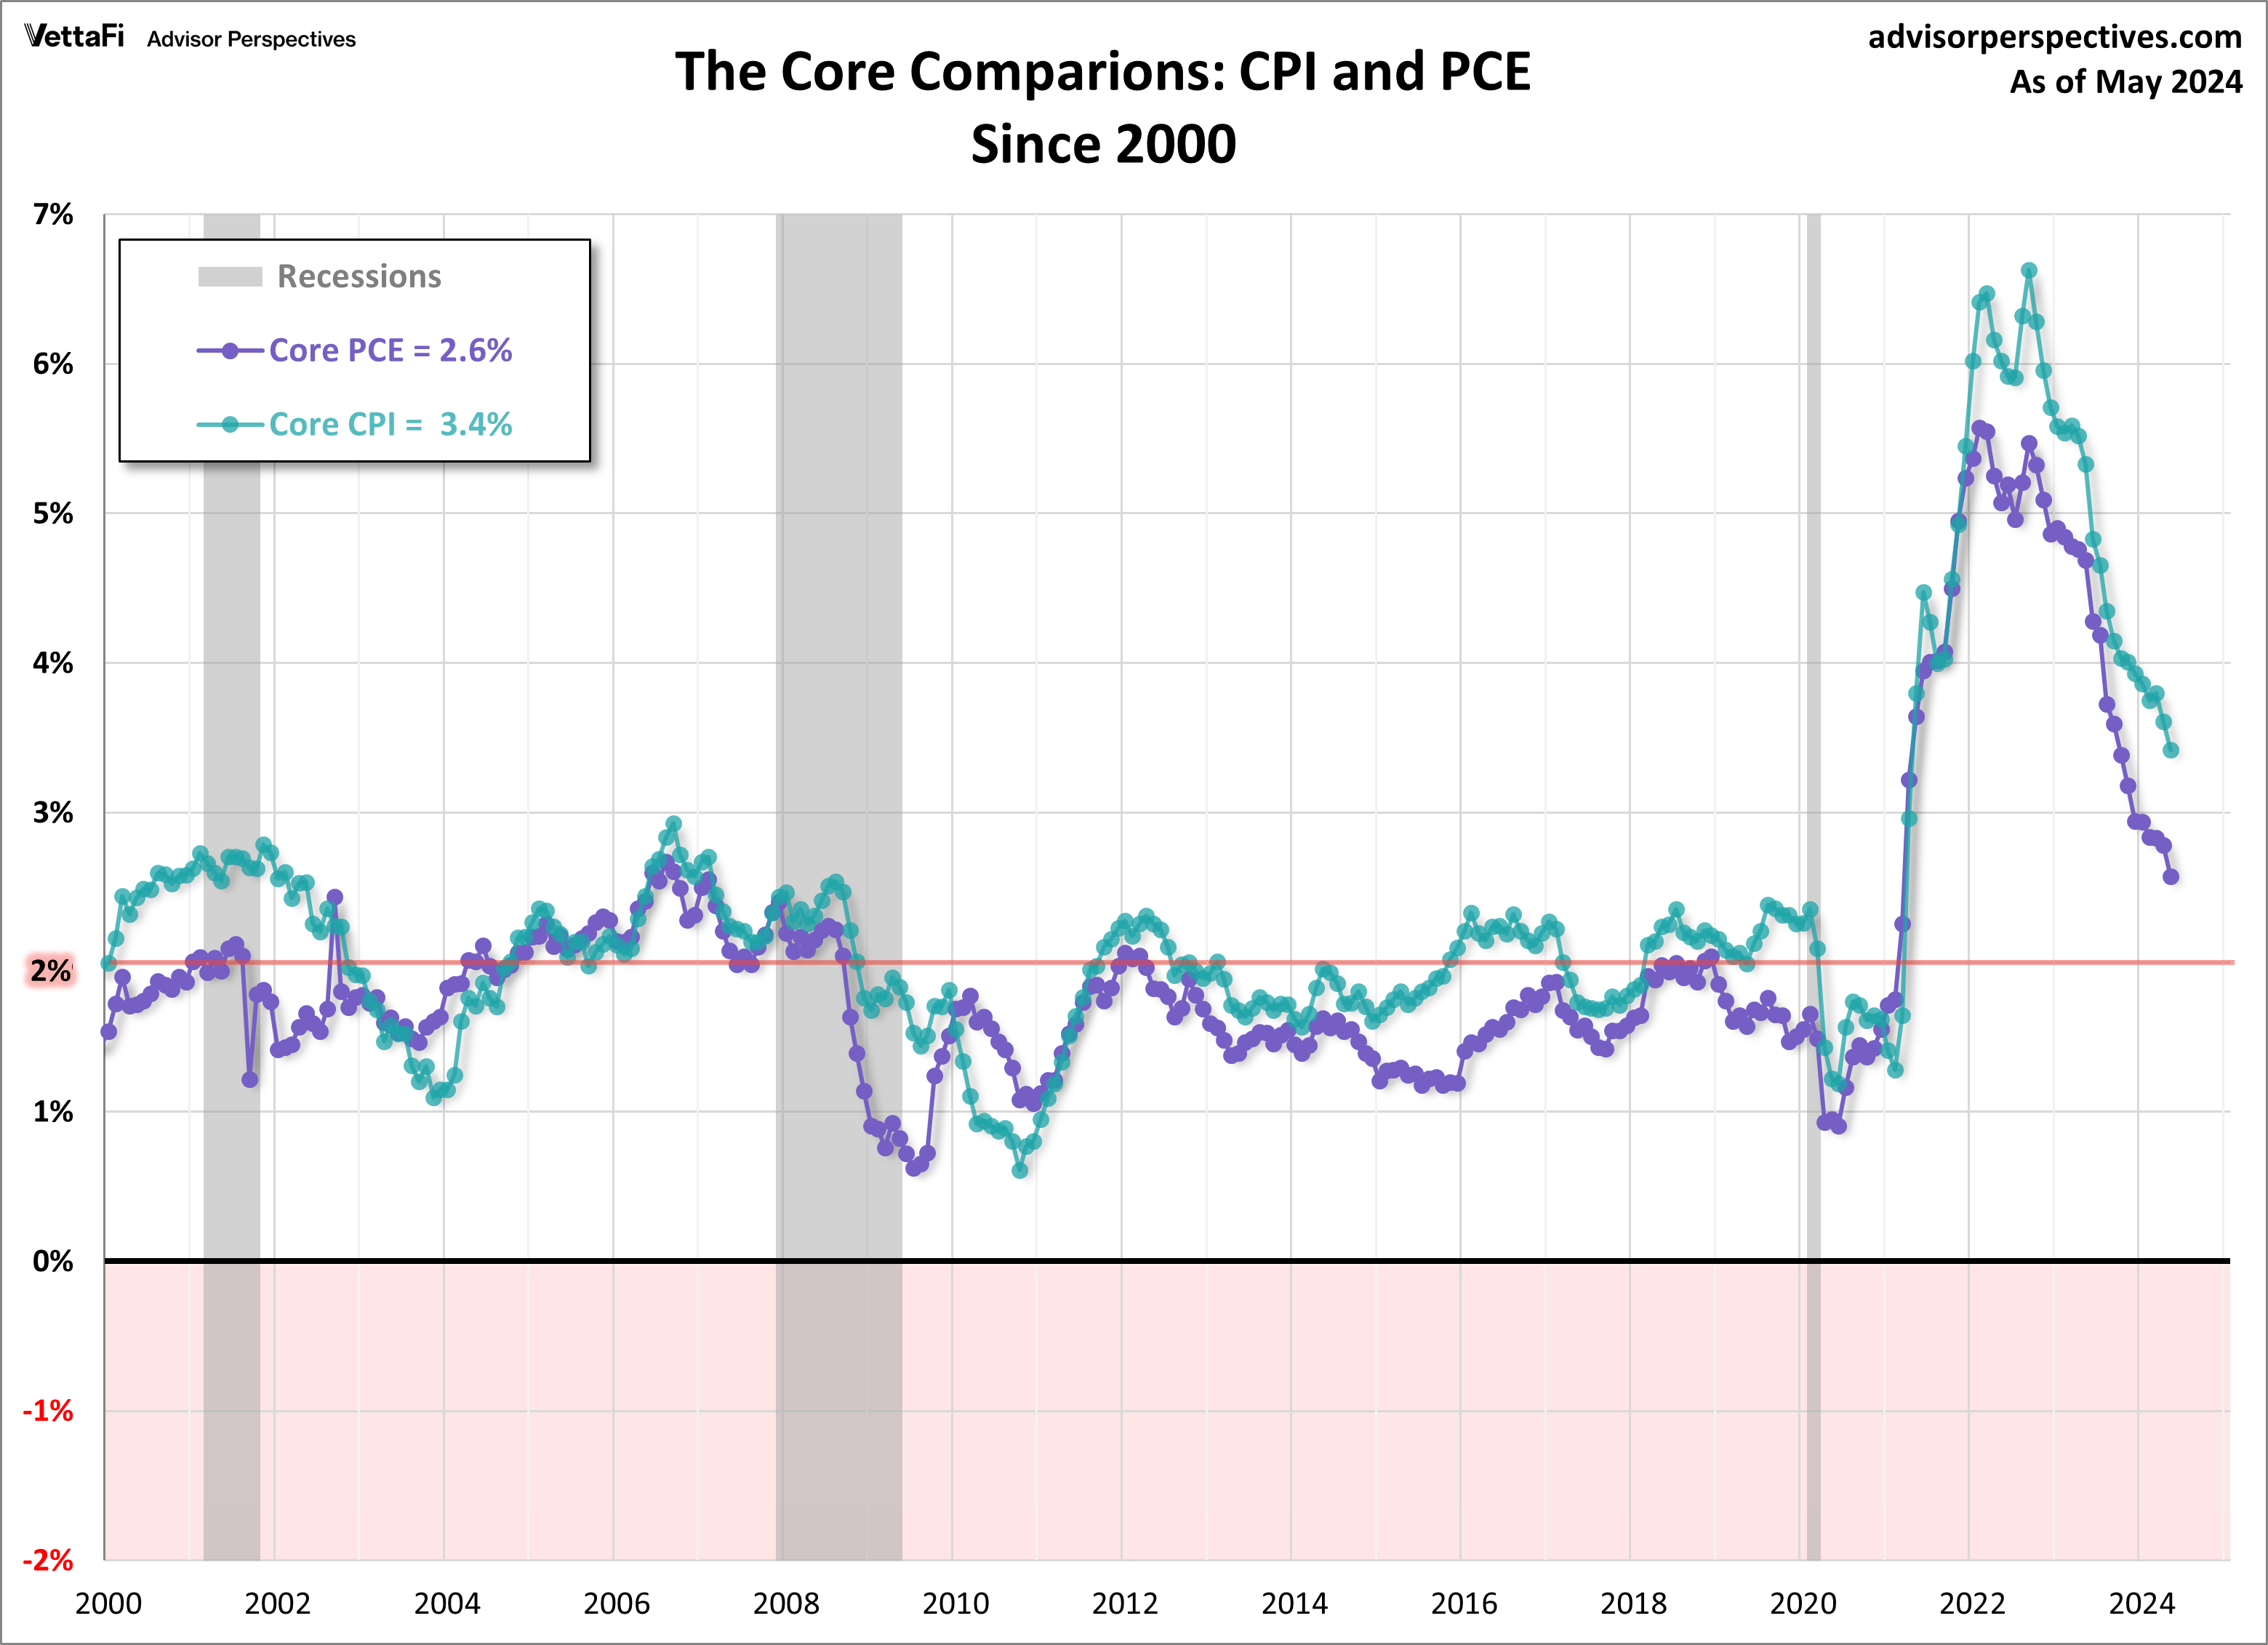 CPI-PCE Core Comparison since 2000